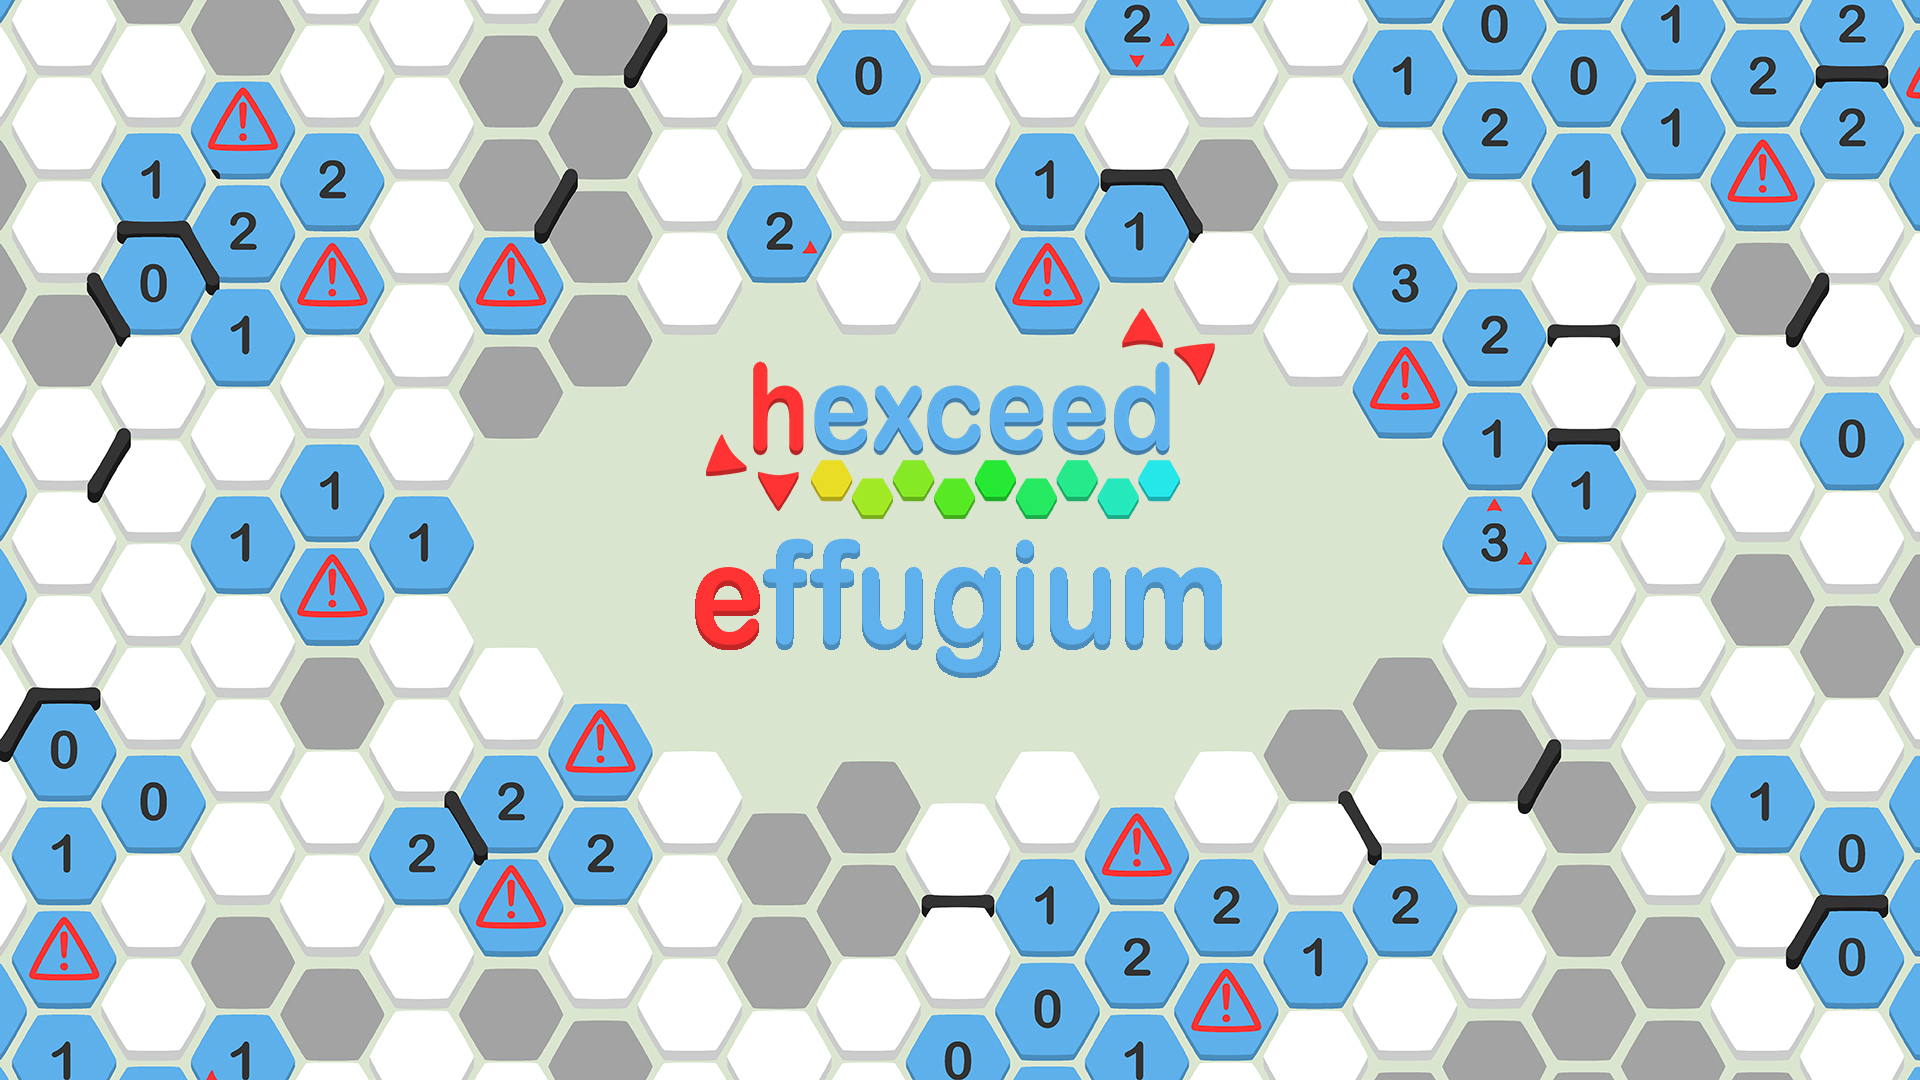 hexceed: Effugium